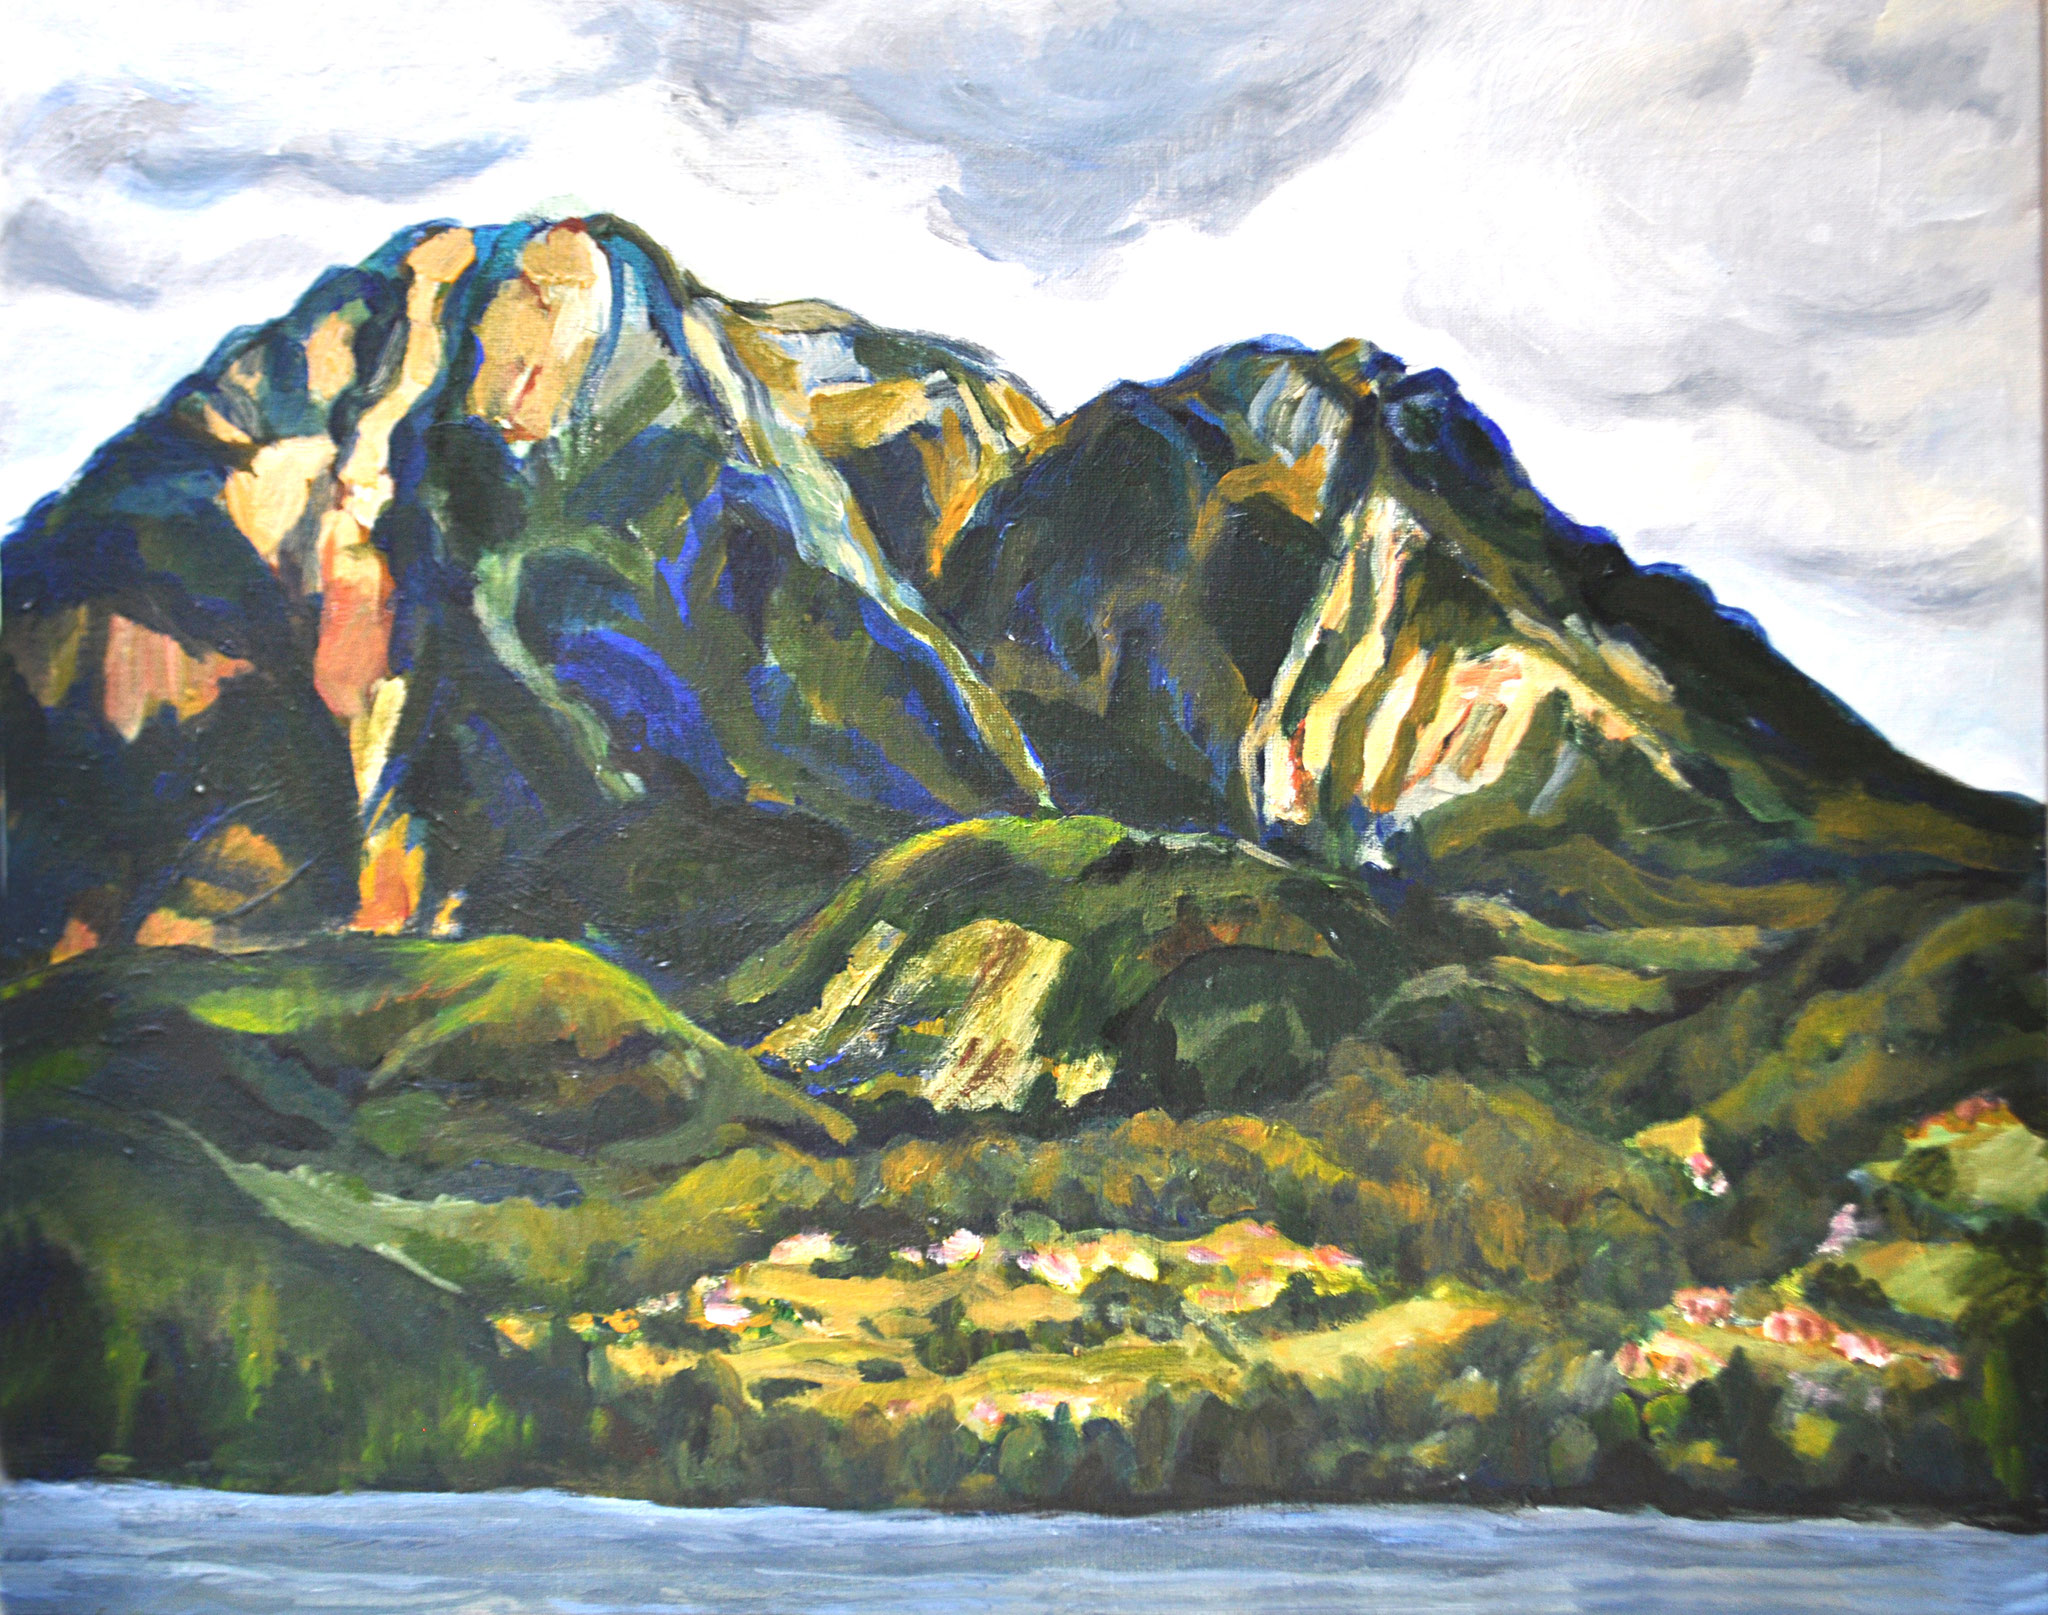 Sarstein vom Altausseer See aus. Steirisches Salzkammergut. Acryl auf Malplatte, 2011. Format: 60 x 50 cm